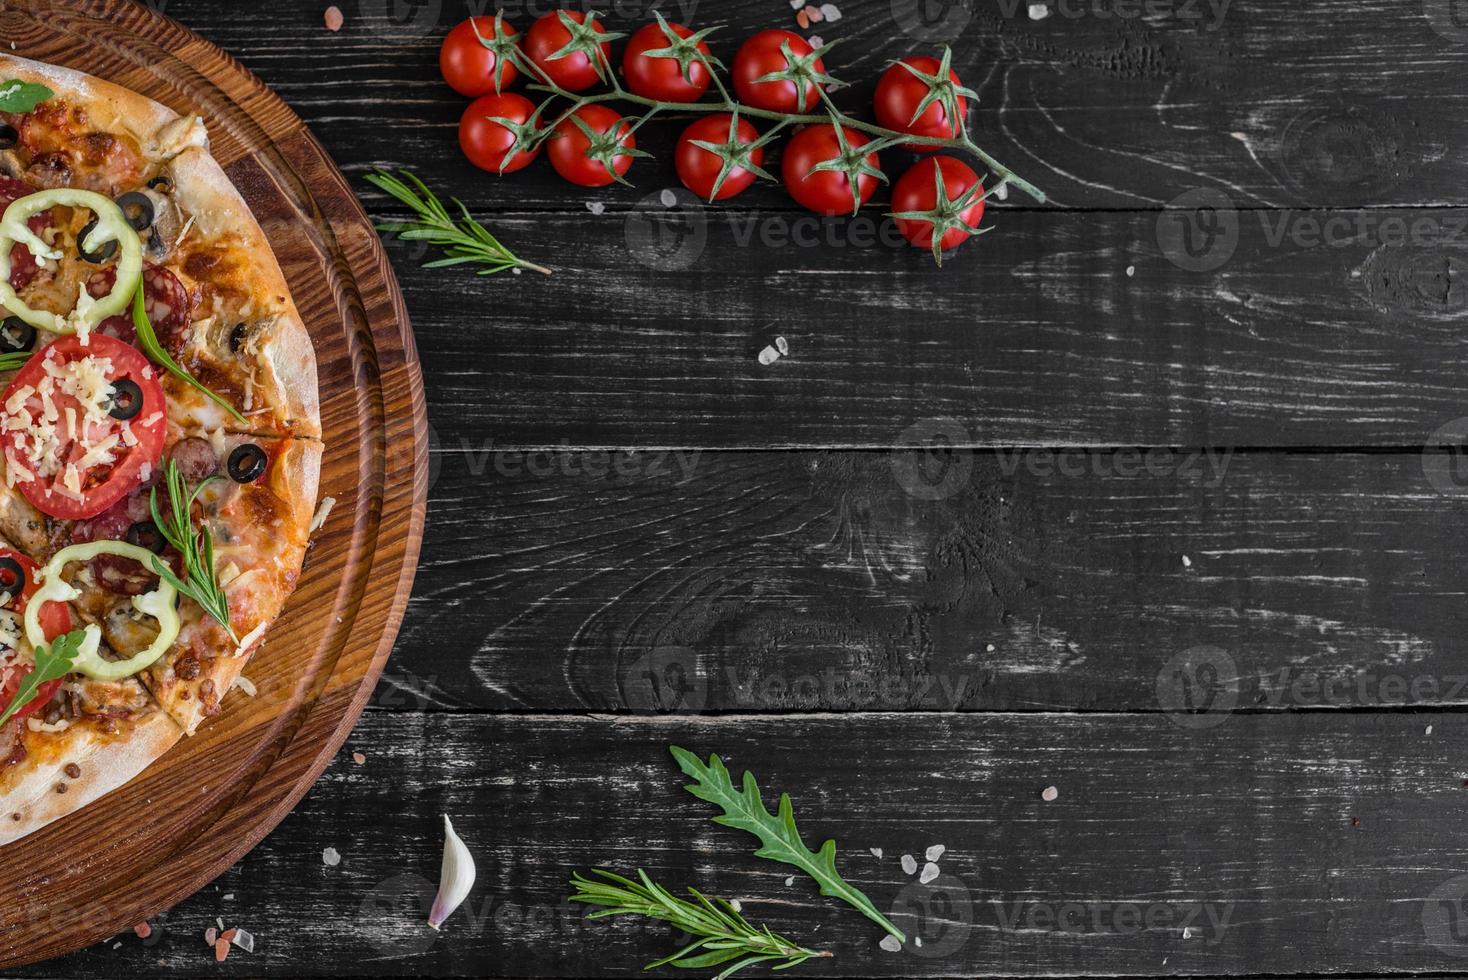 traditionelle italienische pizza, gemüse, zutaten auf dunklem hintergrund foto